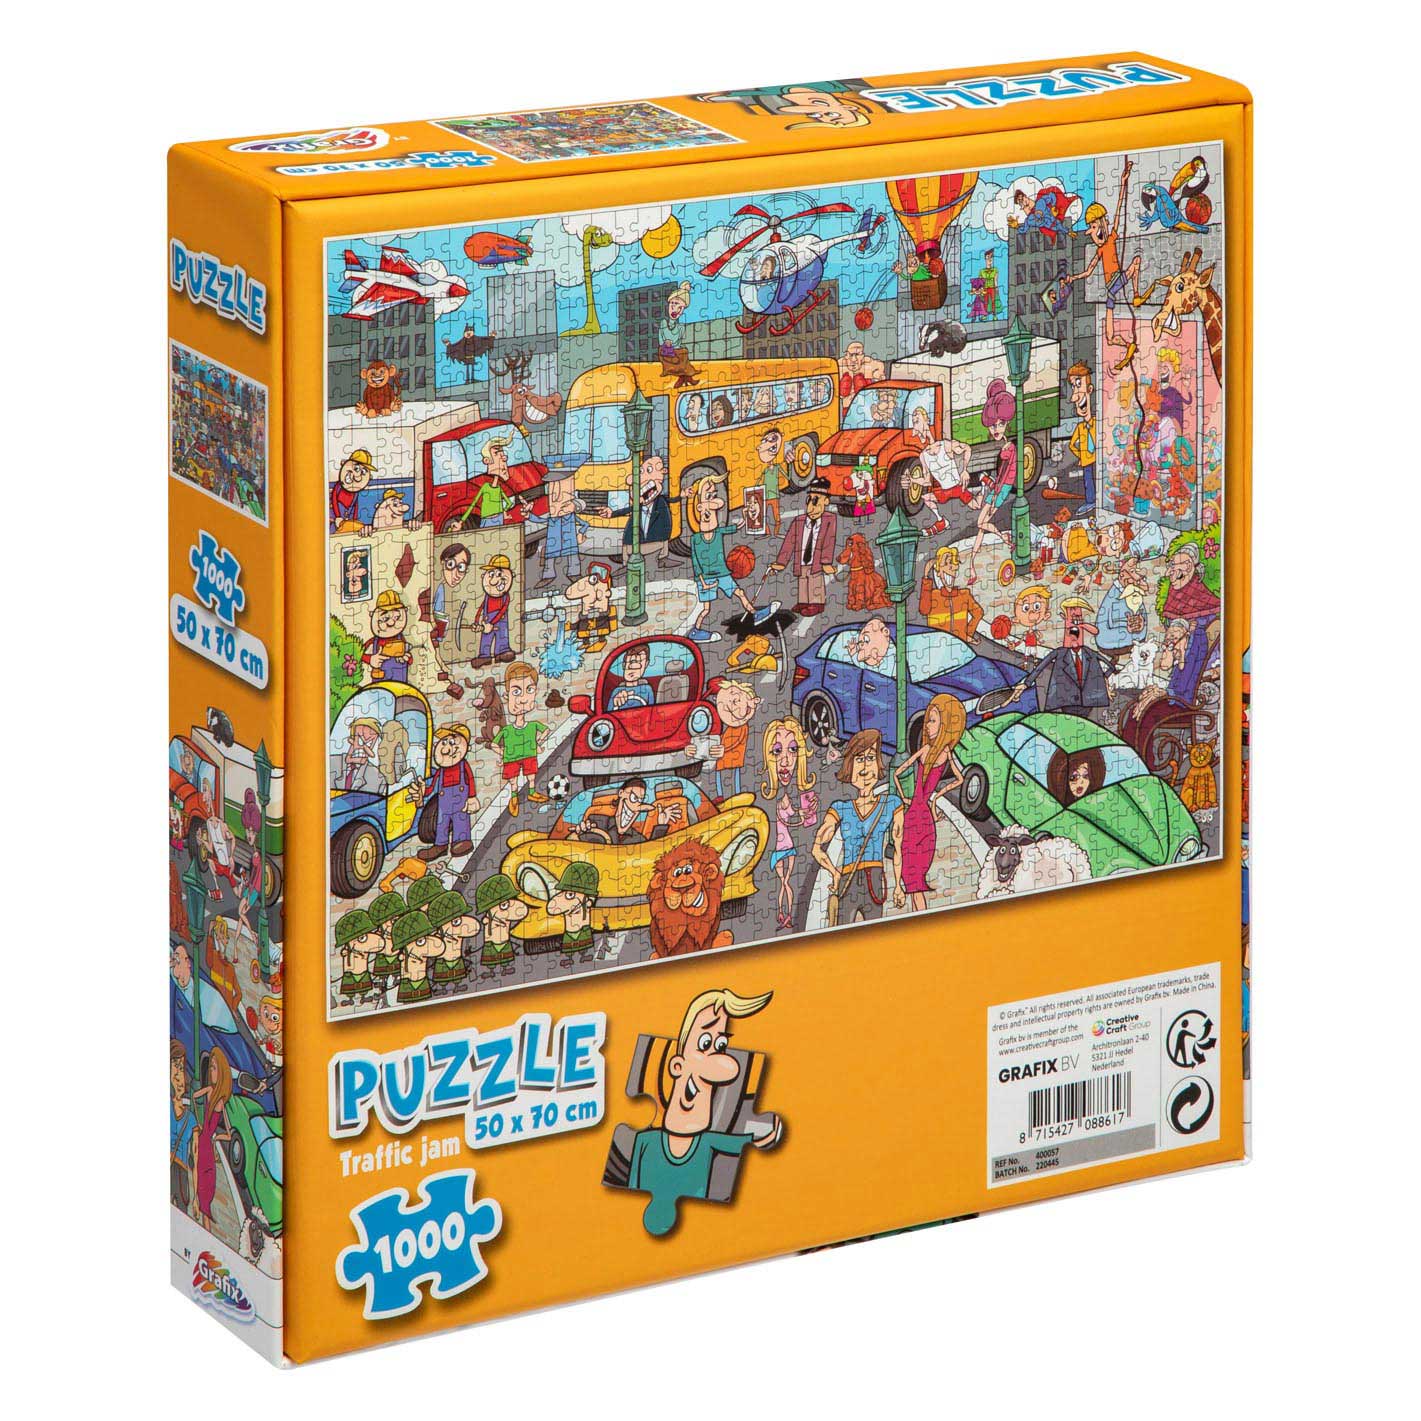 Puzzle Comic Traffic, 1000 Teile.